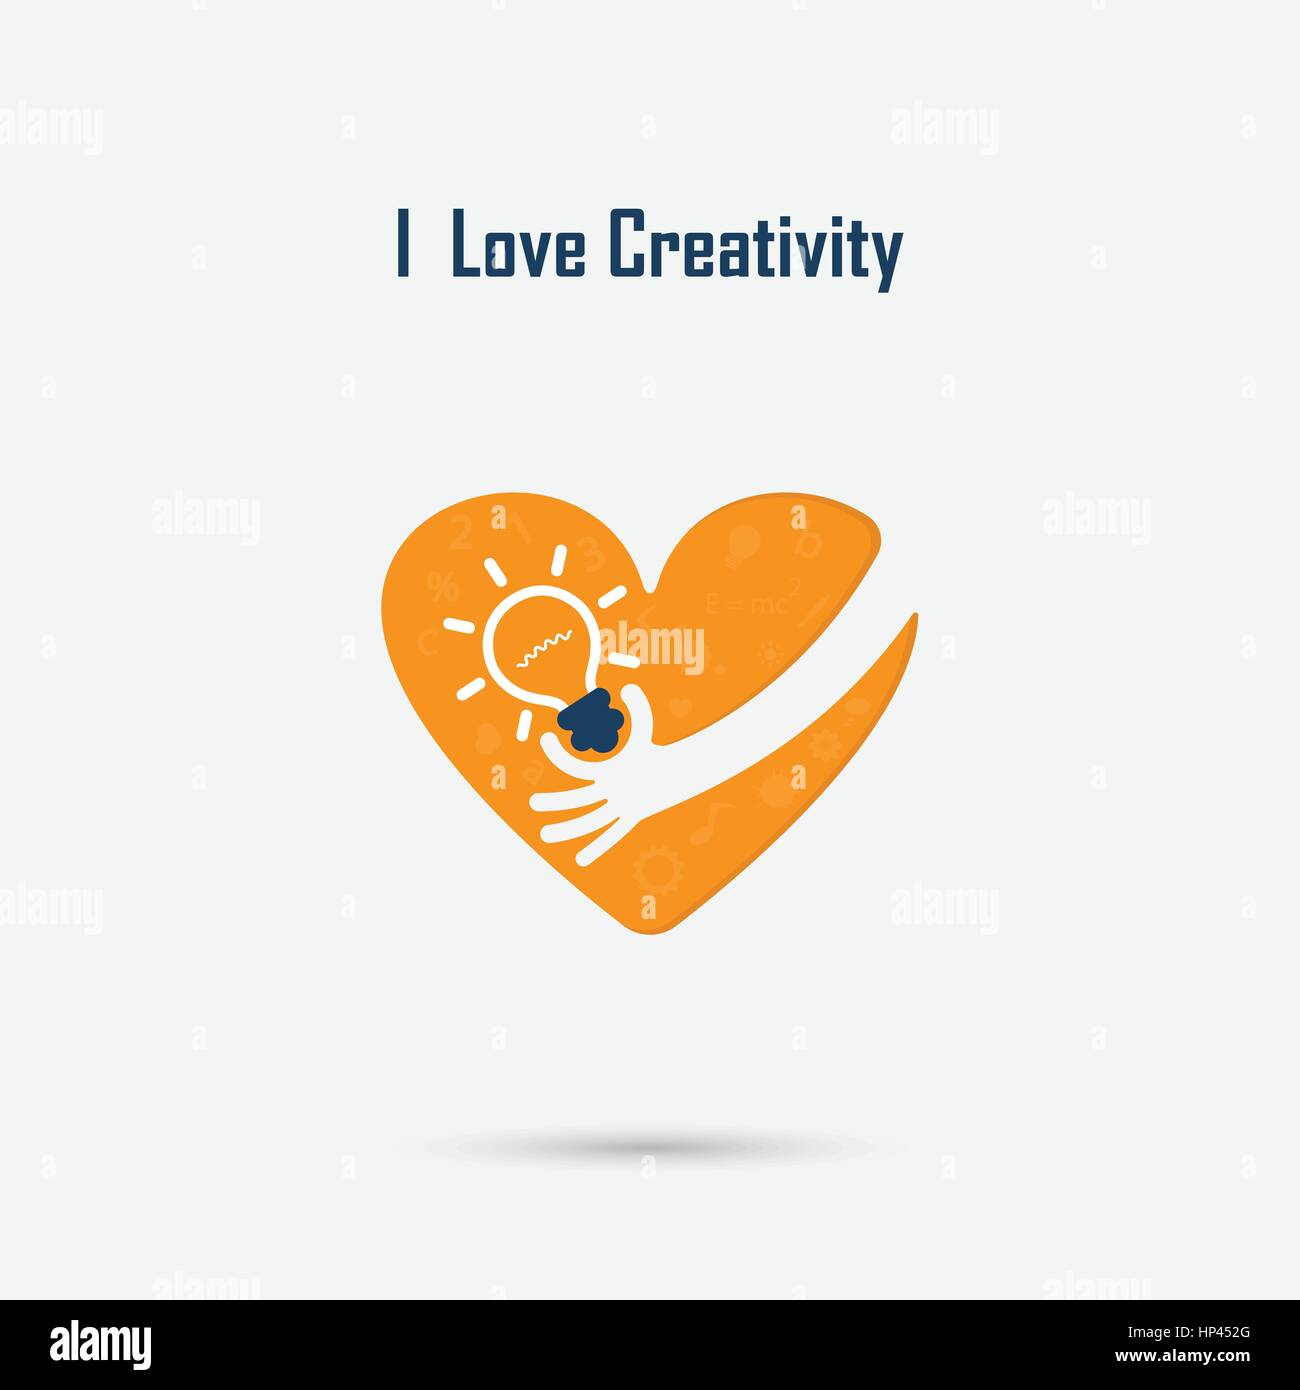 Menschliche Hand, Glühbirne und Herz-Logo Vektor-Design mit Gehirn, lernen, wissen und Kreativität Idee Konzept. Design für Poster, Flyer, Cover, Broschüre, Stock Vektor